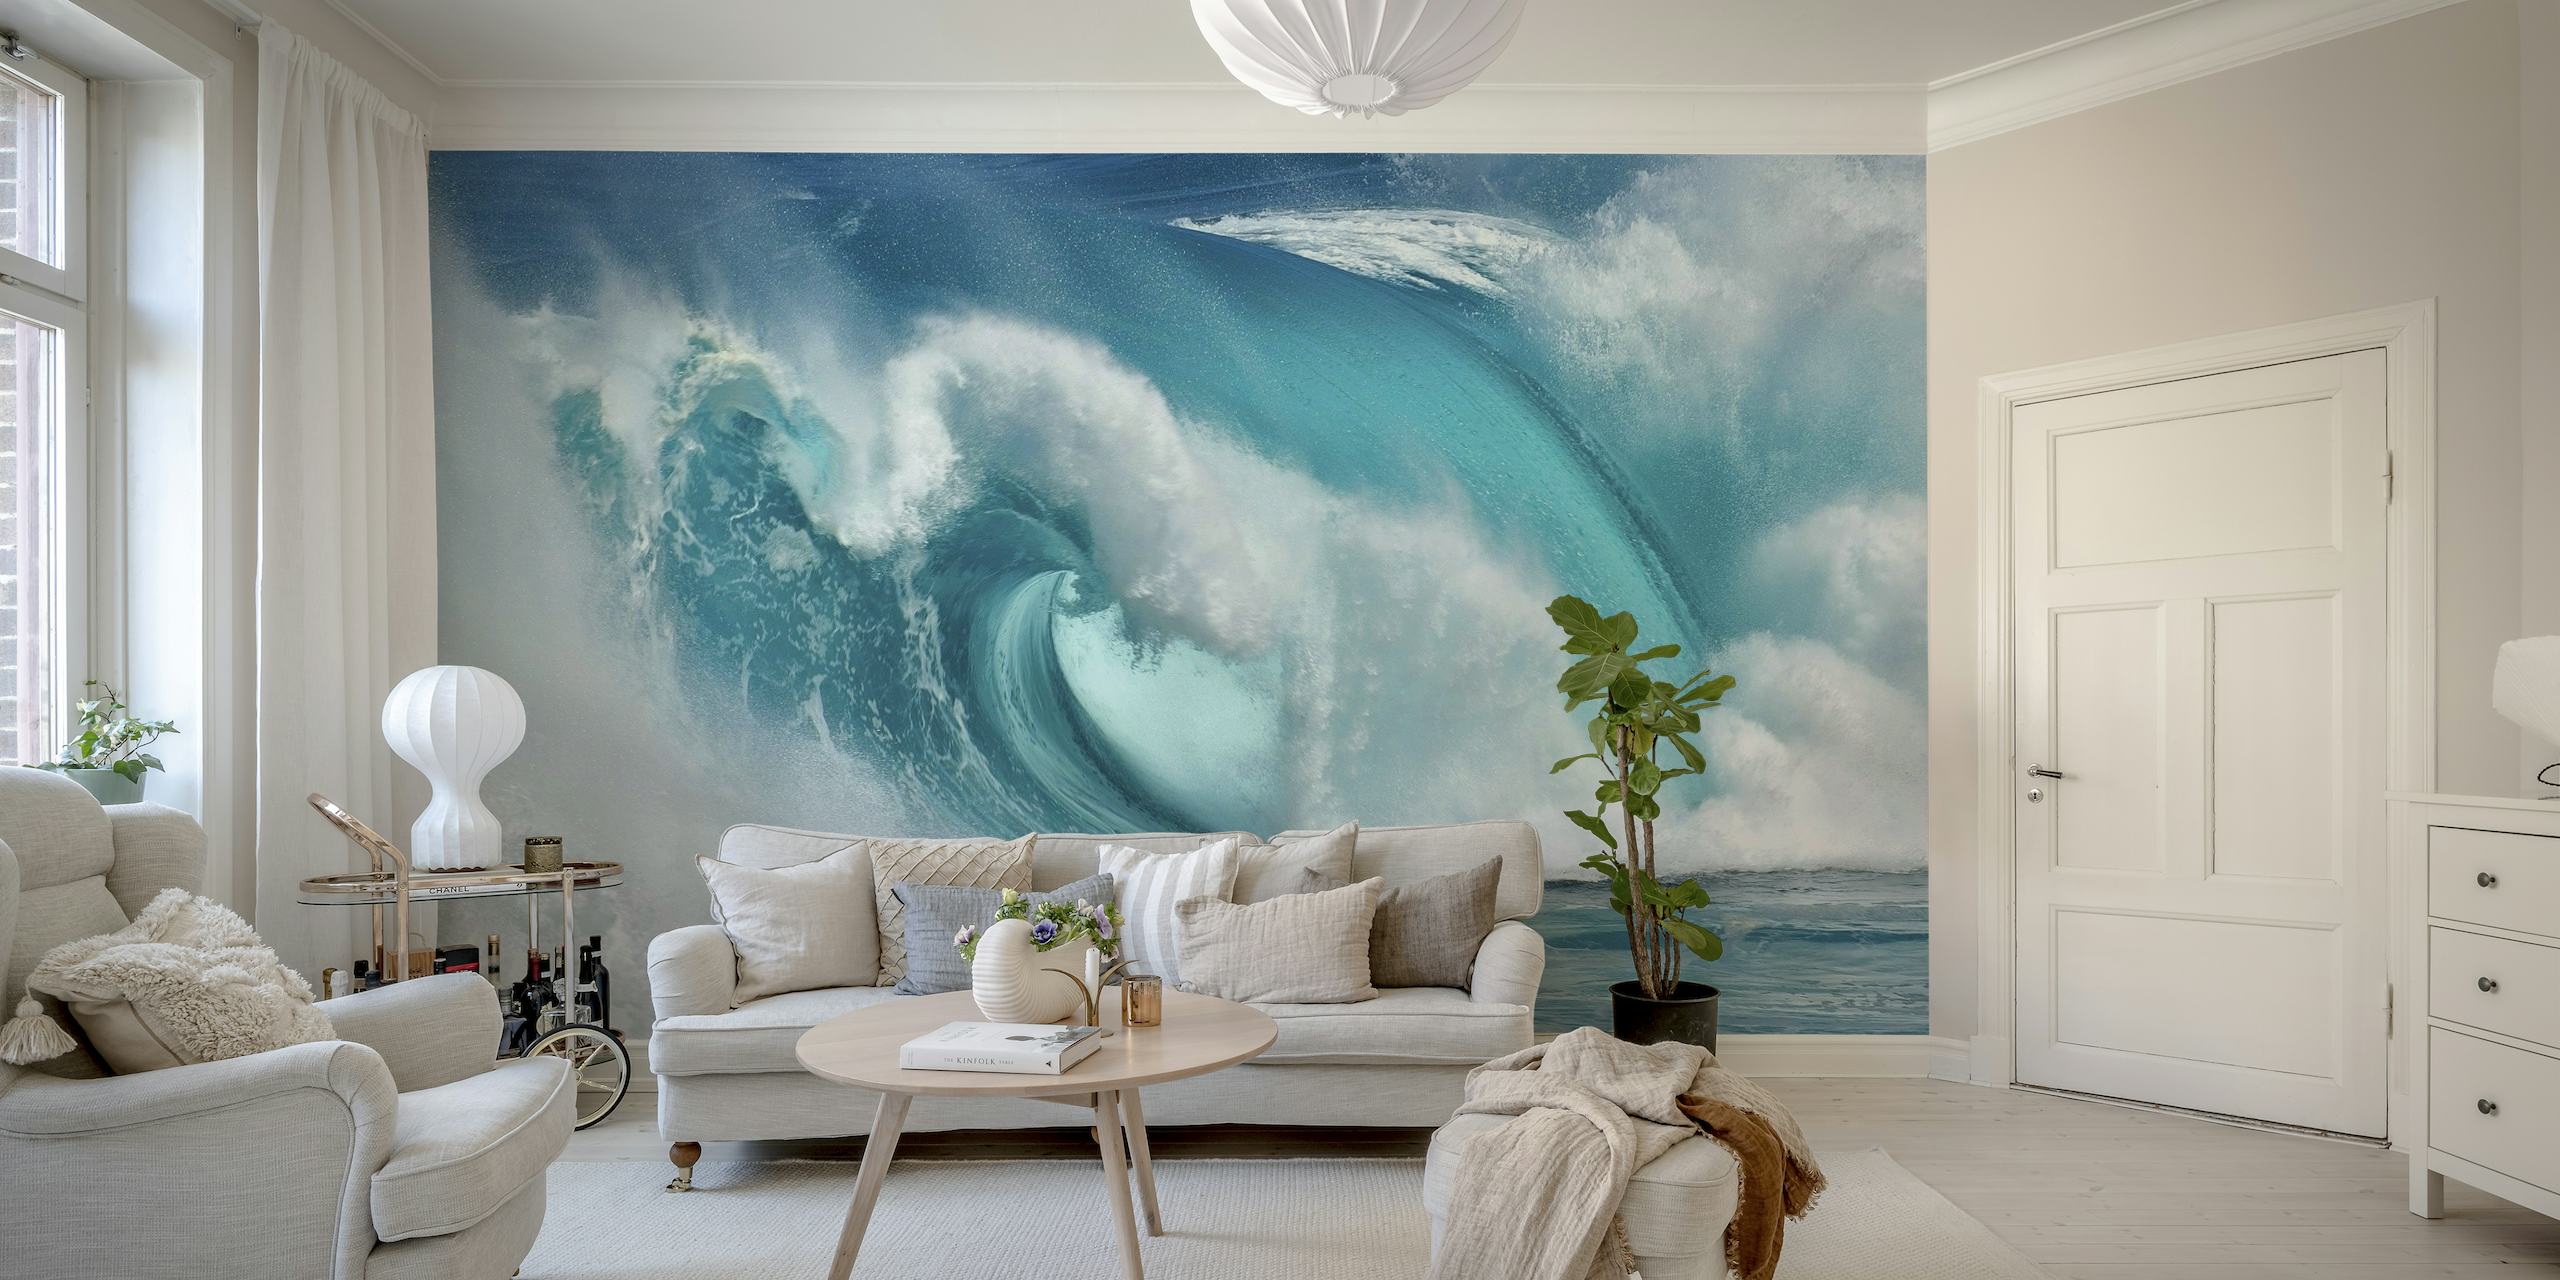 Apstraktni mural oceanskih valova s efektom plave vatre